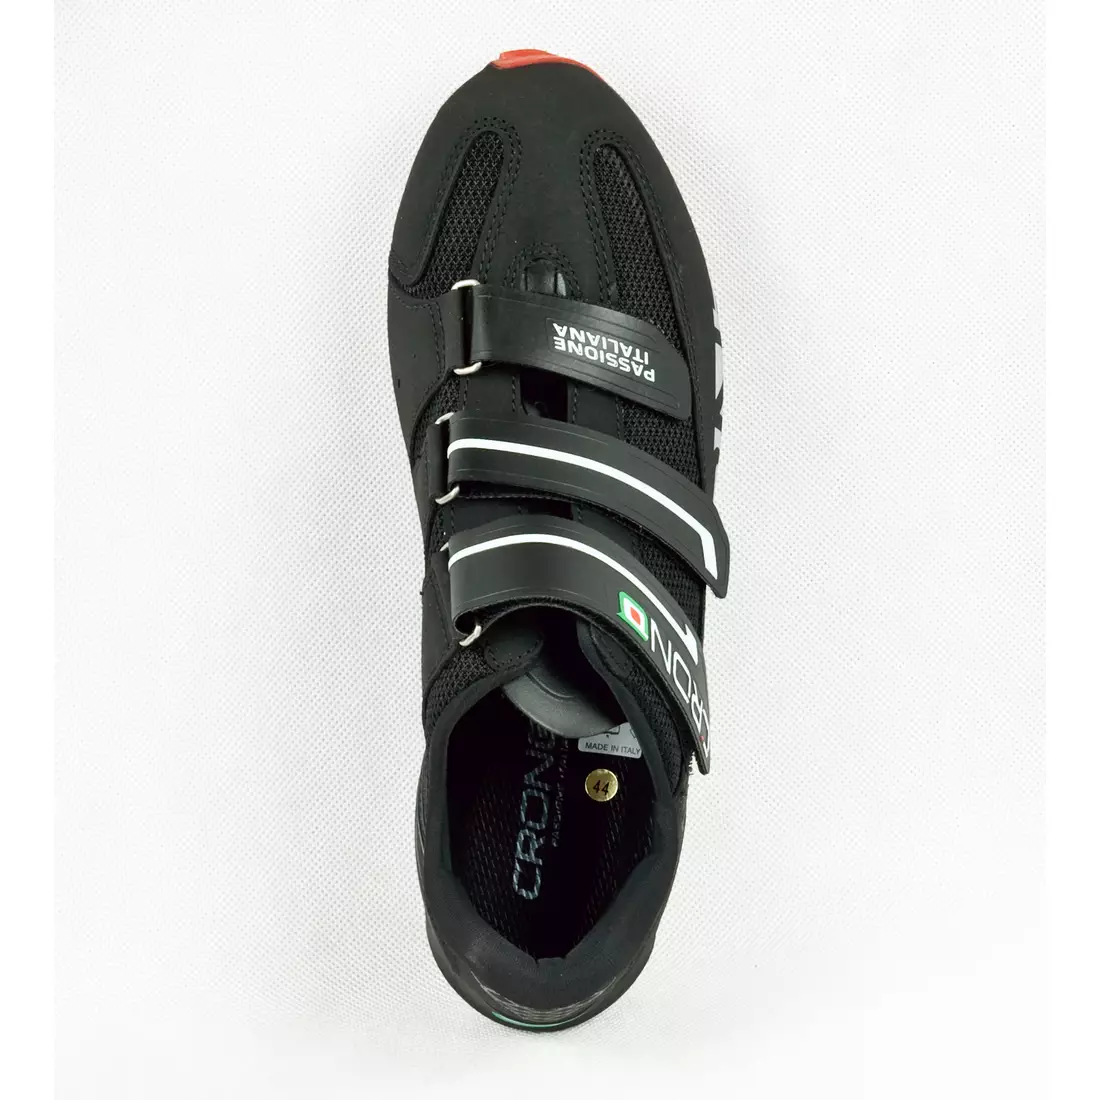 CRONO GAVIA NYLON - MTB kerékpáros cipő - szín: Fekete